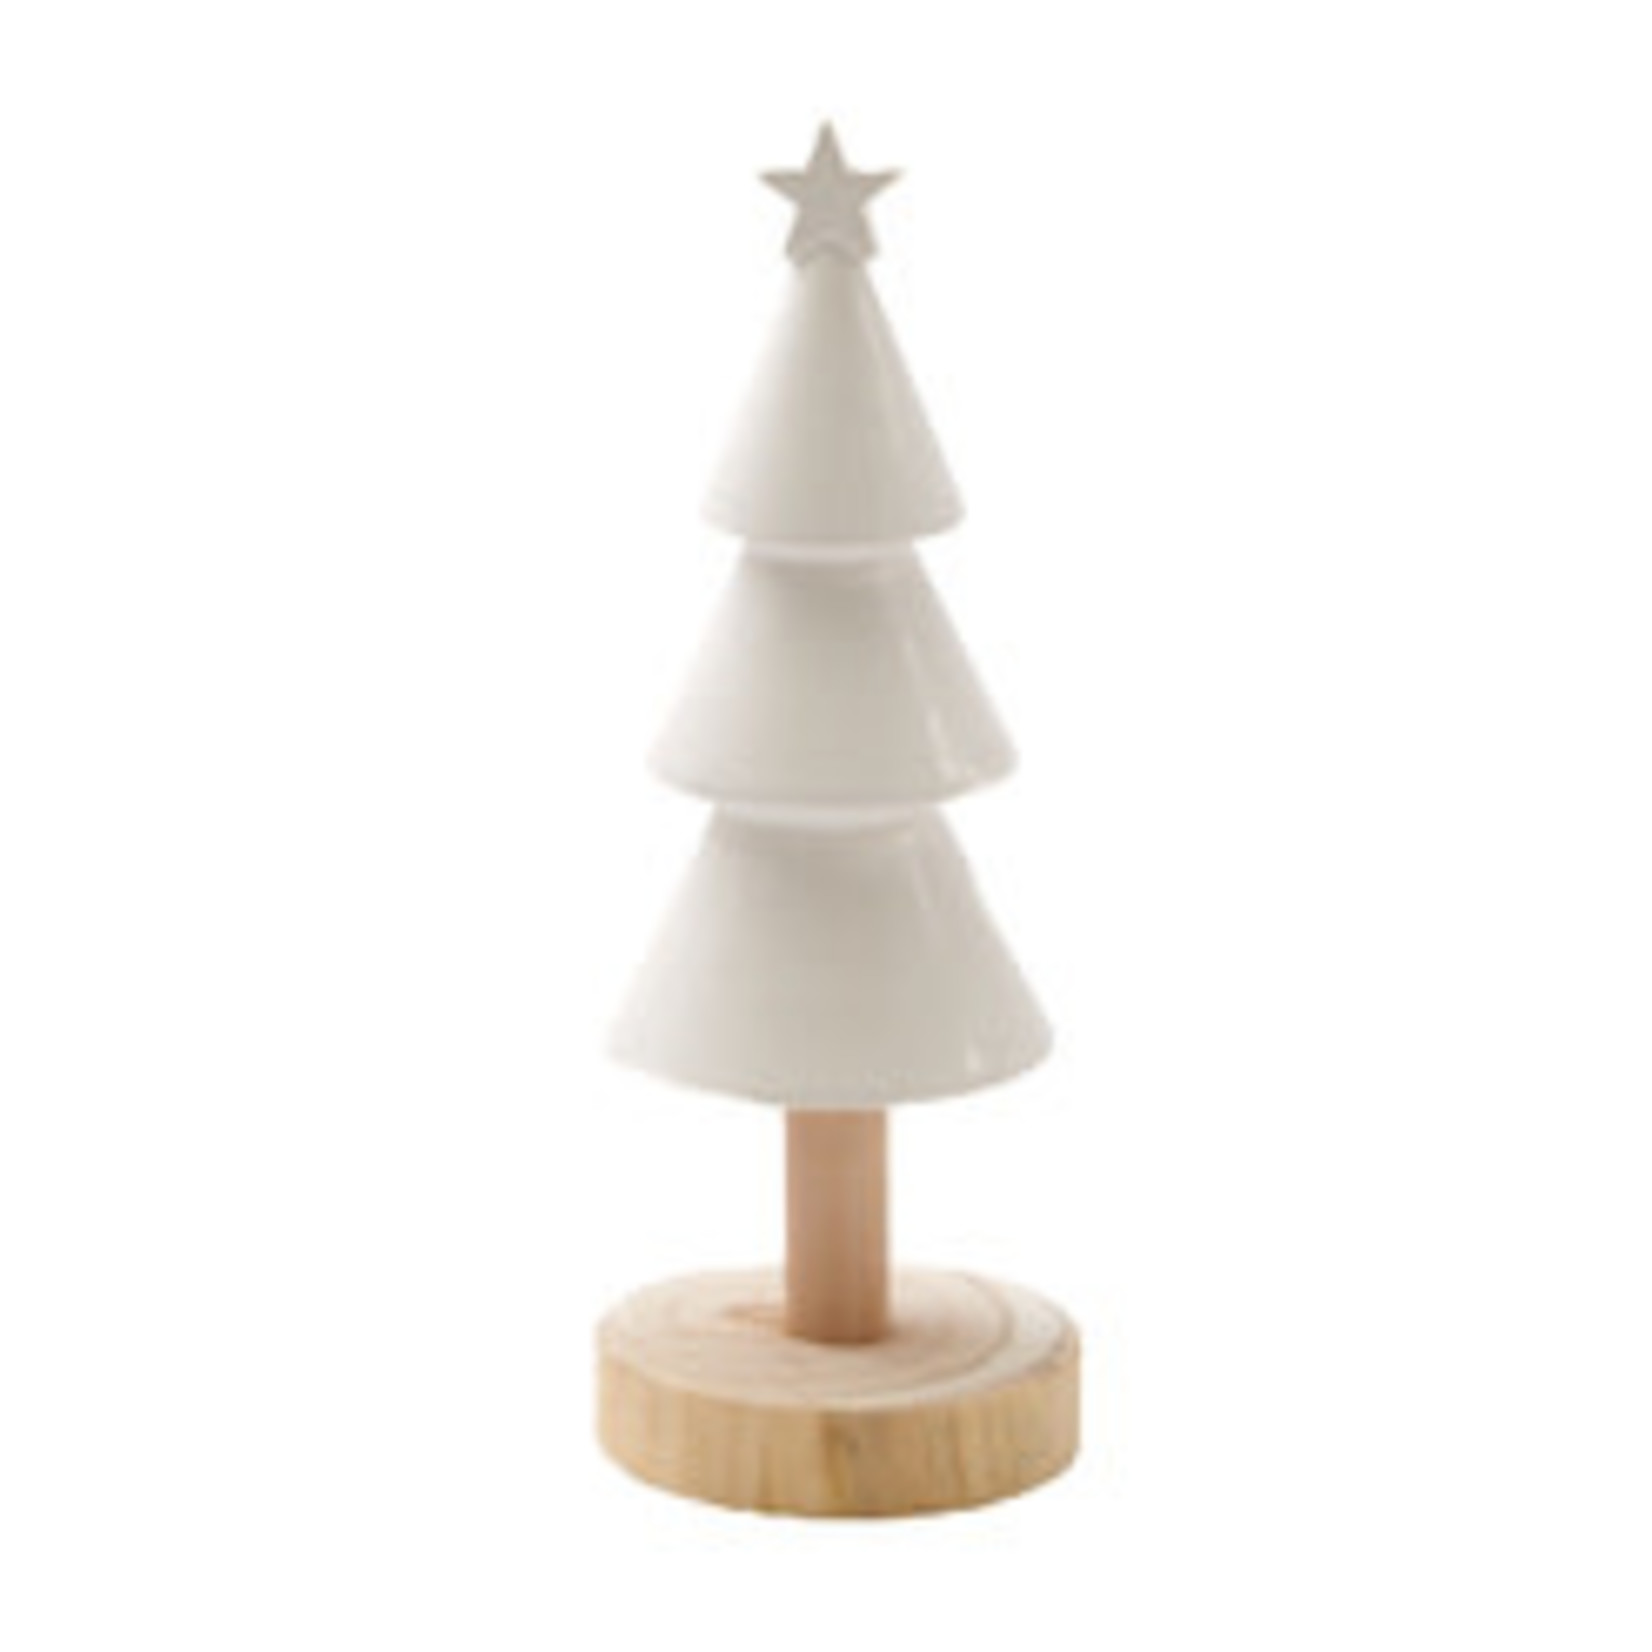 Kerstboom op houten voet - Keramiek - Wit - 25cm